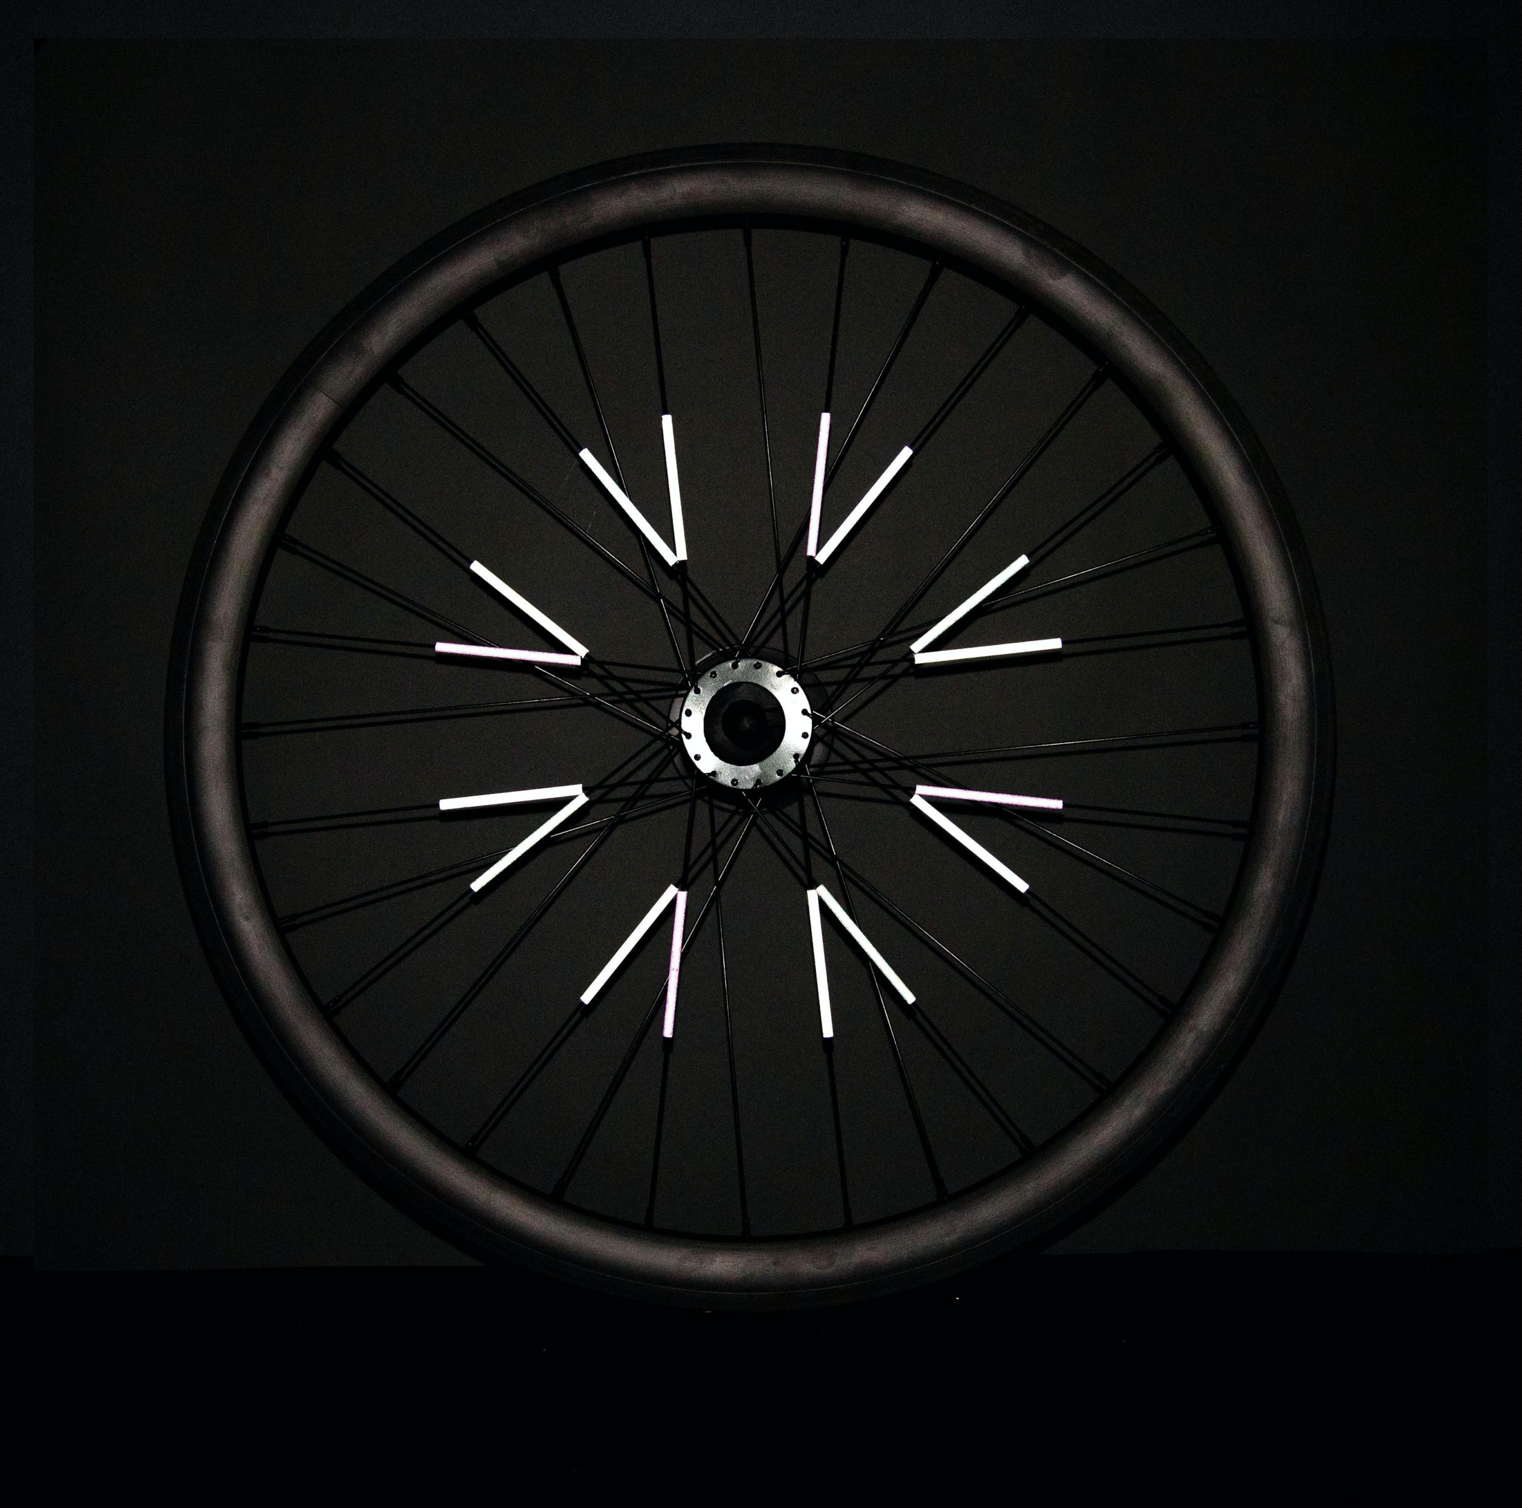 72 Pièces Reflecteur Rayon Velo, 7,5 x 0,5 cm Vélo Rayons Réfléchissants  Réflecteur Roue Velo avec Une Visibilité à 360°[S428]